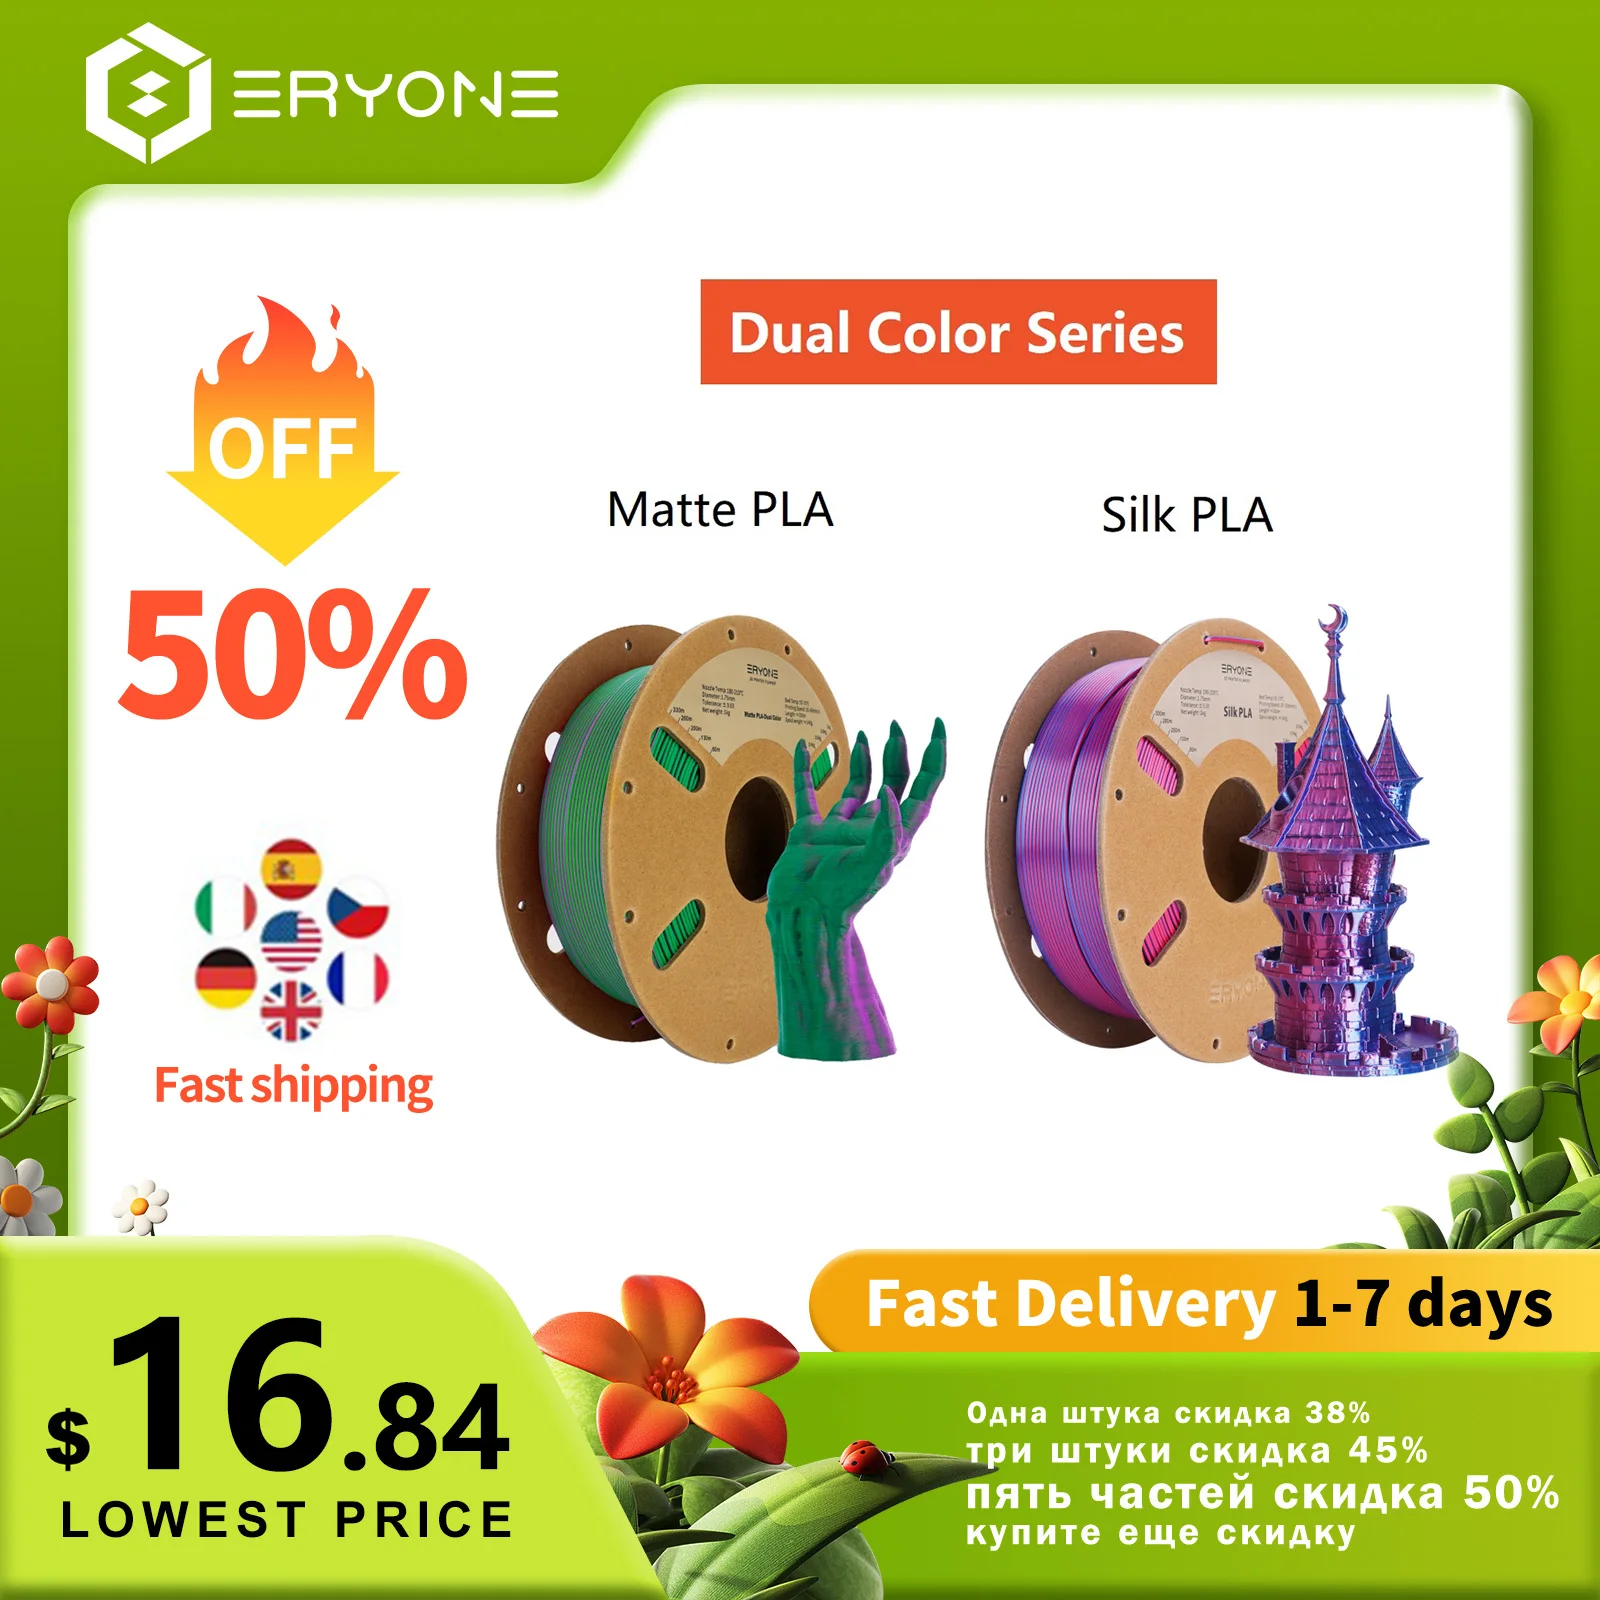 ERYONE-Filament en fibre de carbone ABS PETG/PLA, 1kg, 1.75mm ± 0.03mm,  pour imprimante 3D FDM, haute qualité, livraison gratuite, promotion .co.jp  - AliExpress